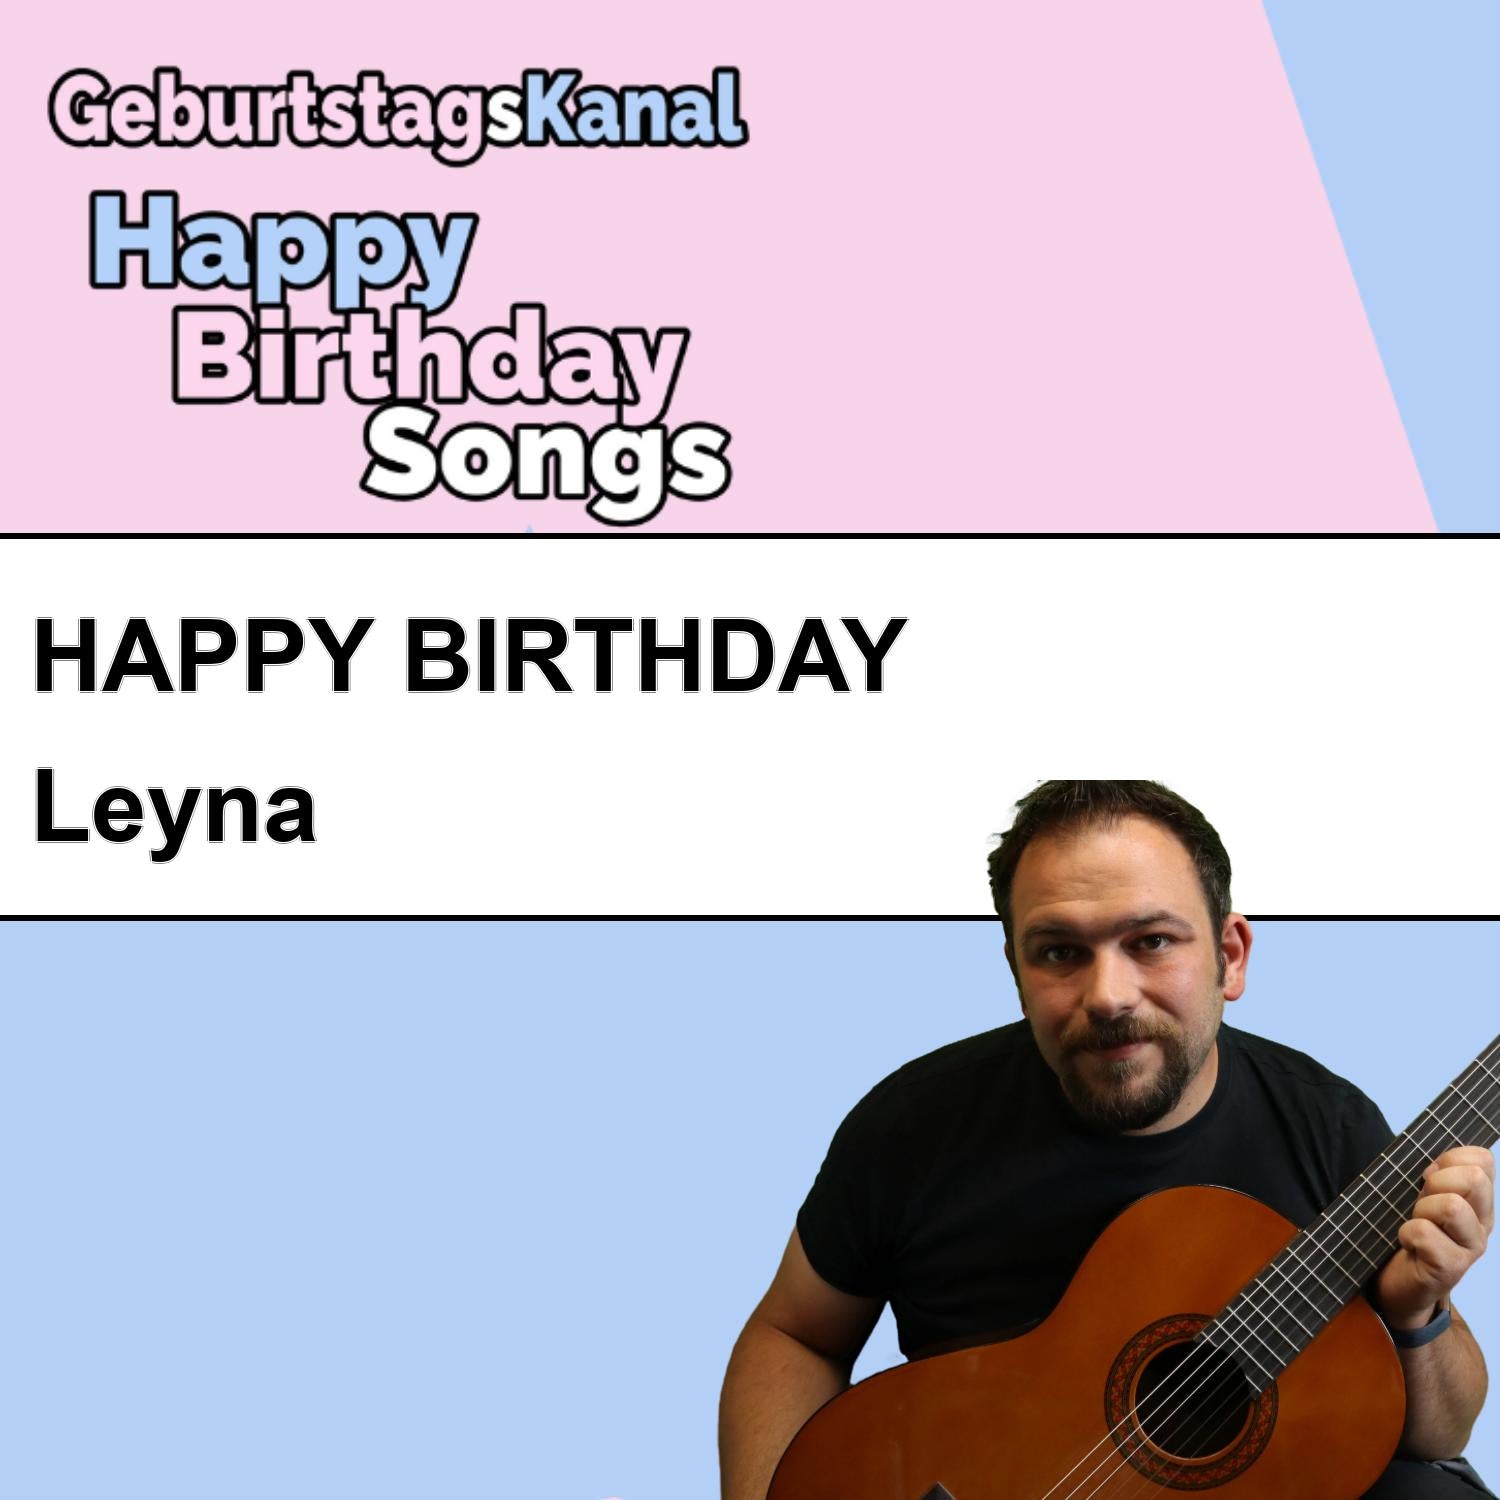 Produktbild Happy Birthday to you Leyna mit Wunschgrußbotschaft